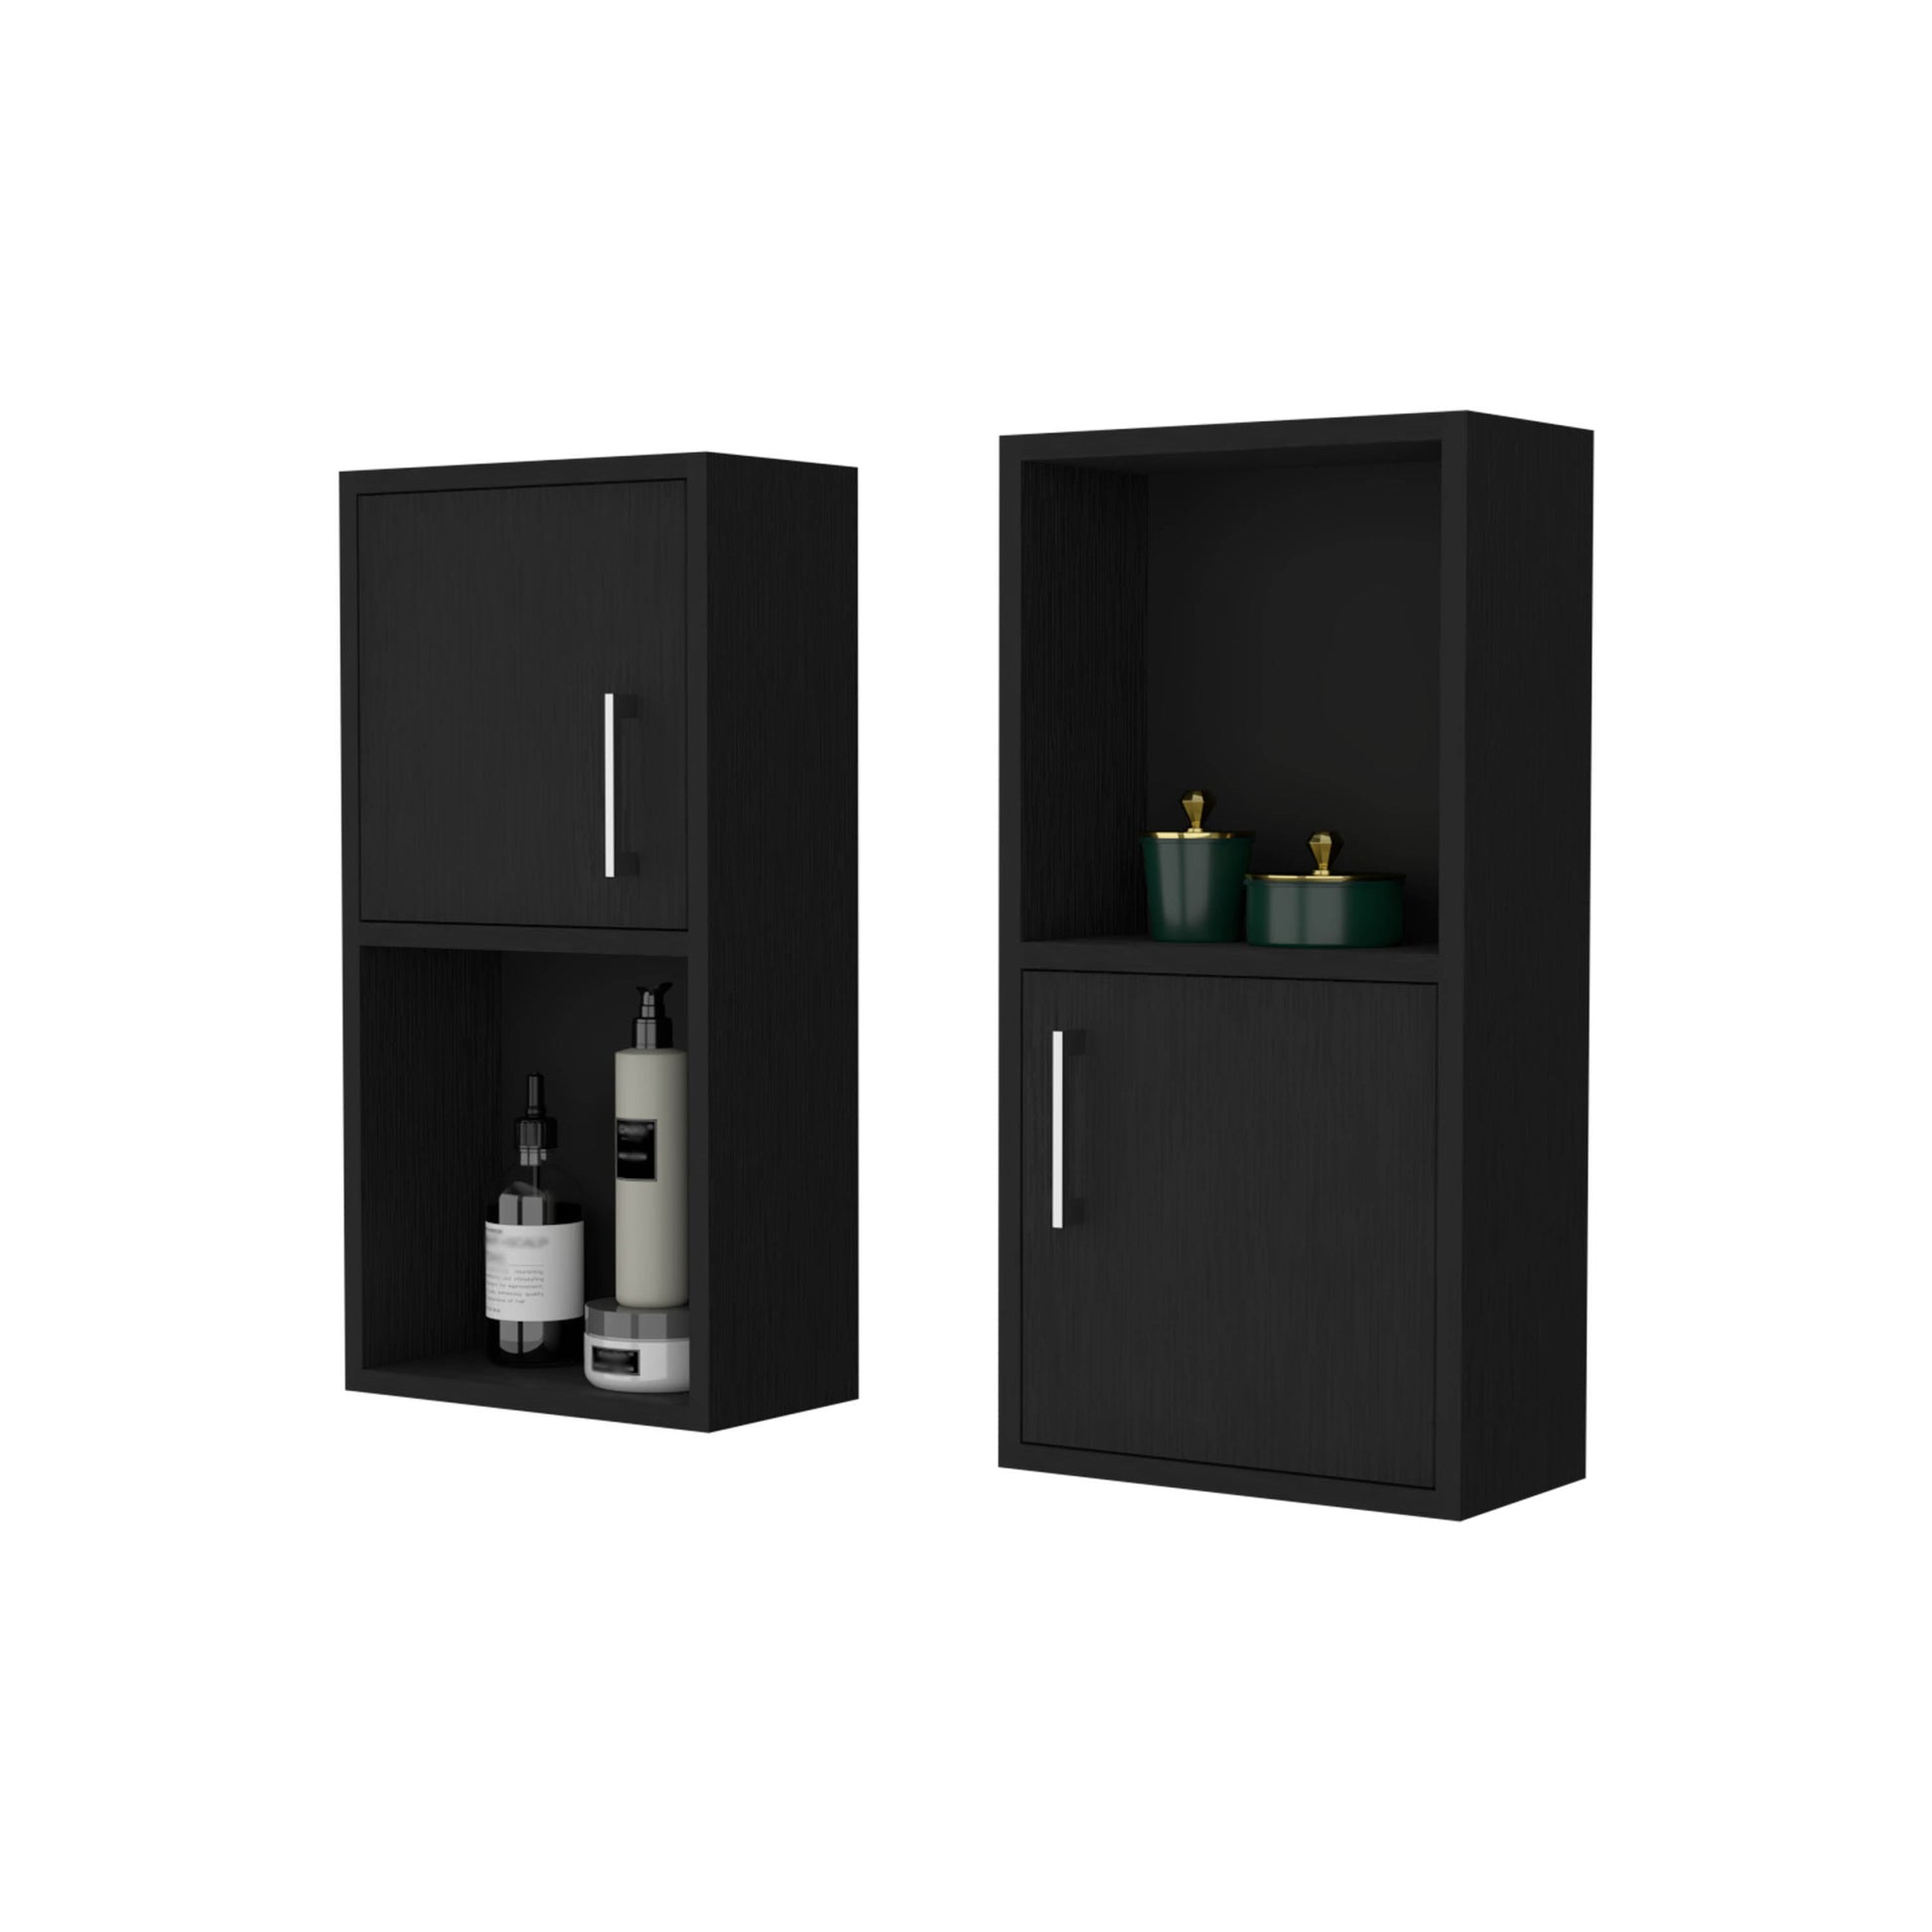 Sydney Black 2 Bathroom Medicine Cabinets With